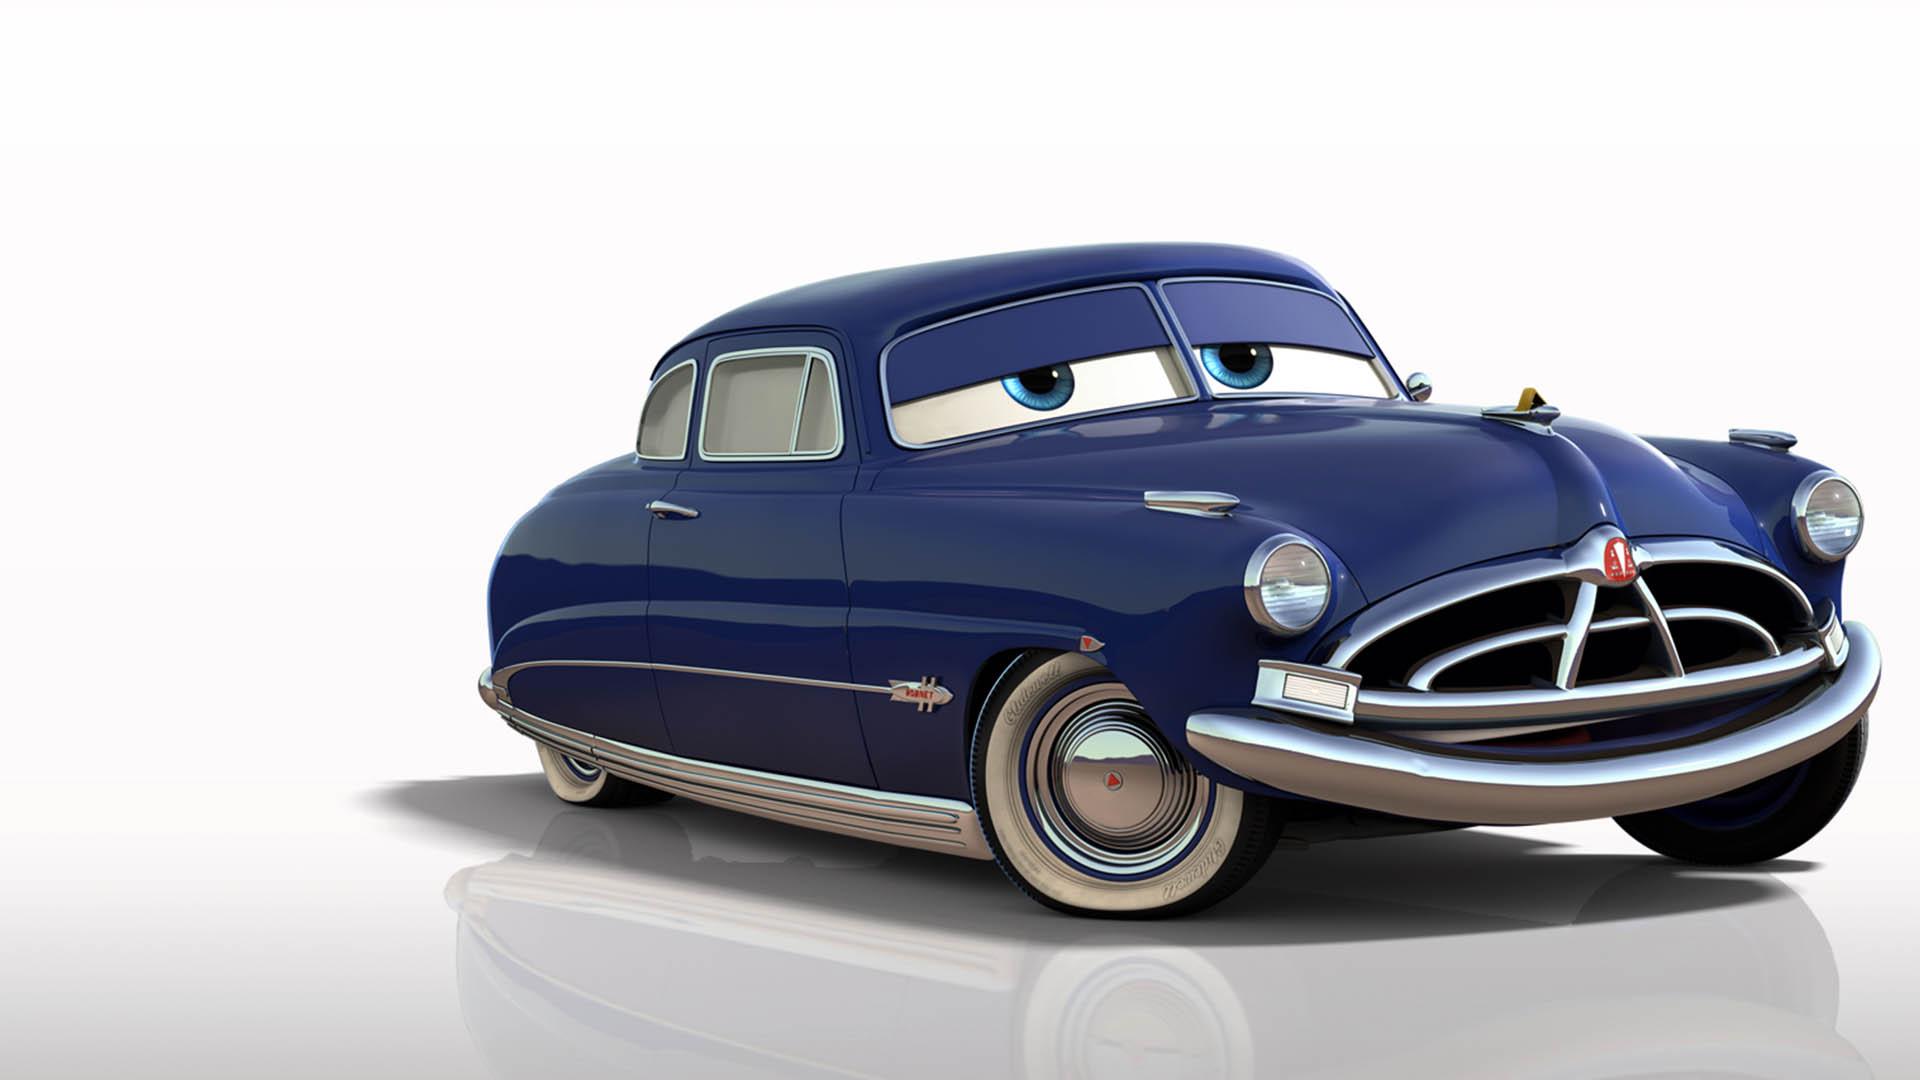 داک هادسون در انیمیشن Cars